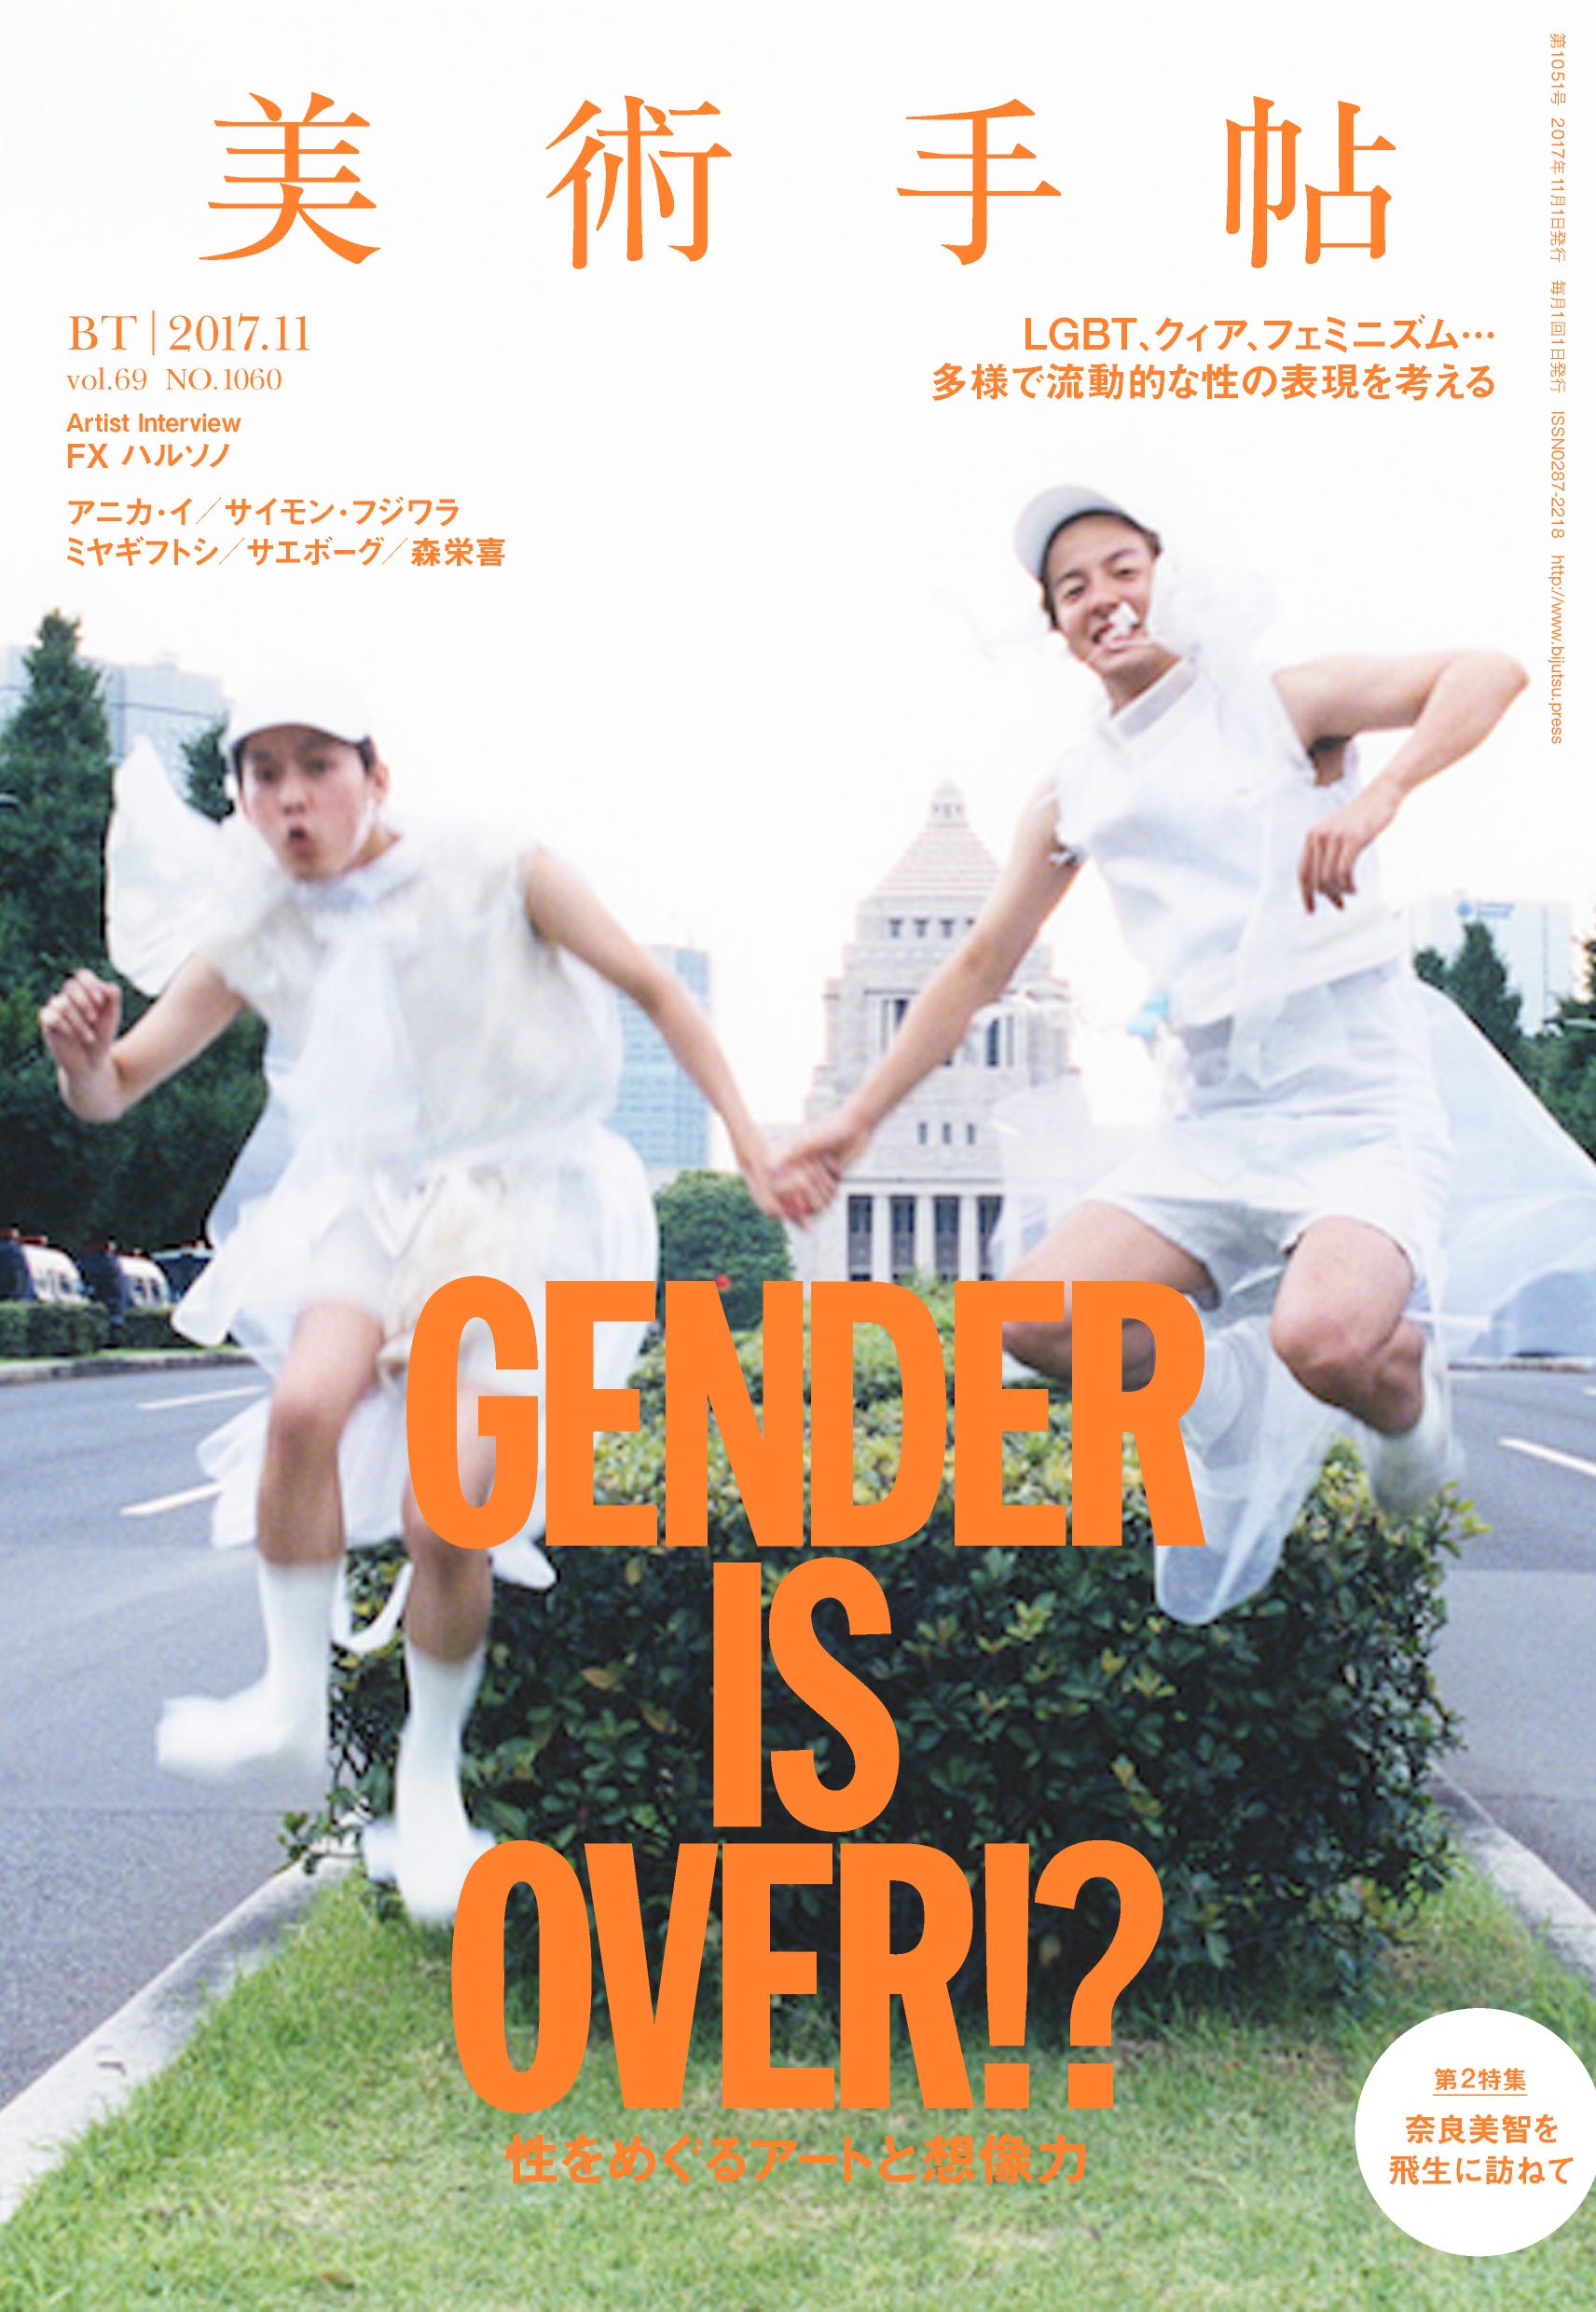 アートをとおしてジェンダーやセクシュアリティを考える 美術手帖 11月号は Gender Is Over 特集 美術出版社のプレスリリース